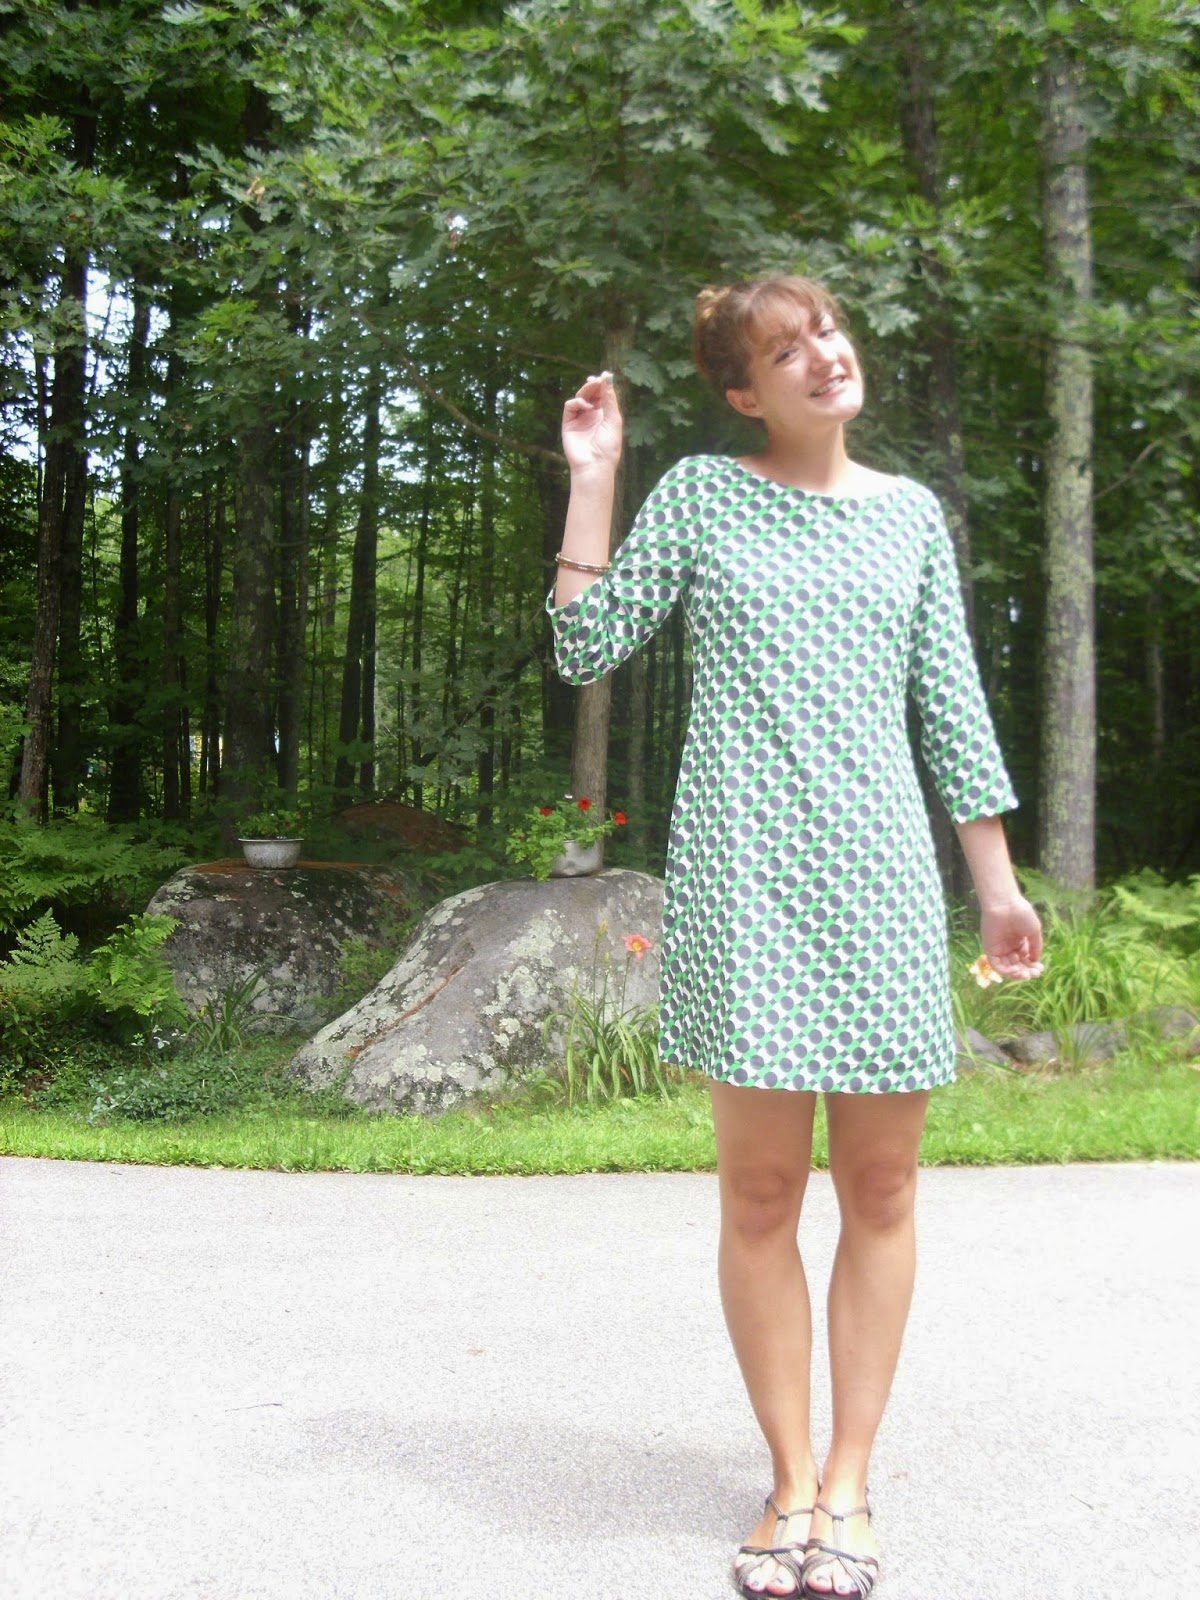 Young Yankee Lady: 60's shift dress mod bouffant bun hair style blogger 